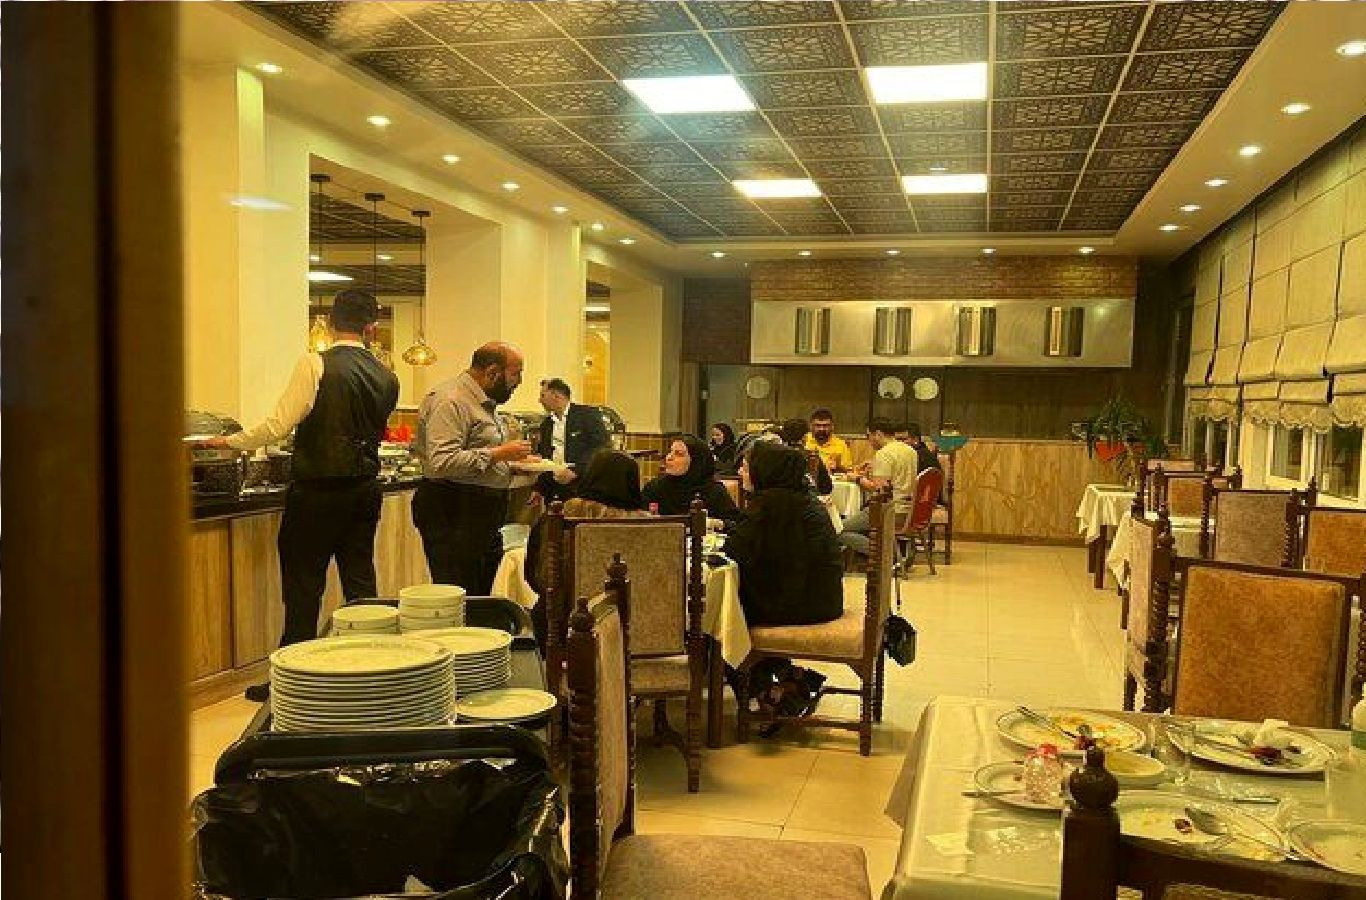 آتش هتل محدوده ولیعصر تهران مهار شد / جزئیات آخرین وضعیت مسافران آن